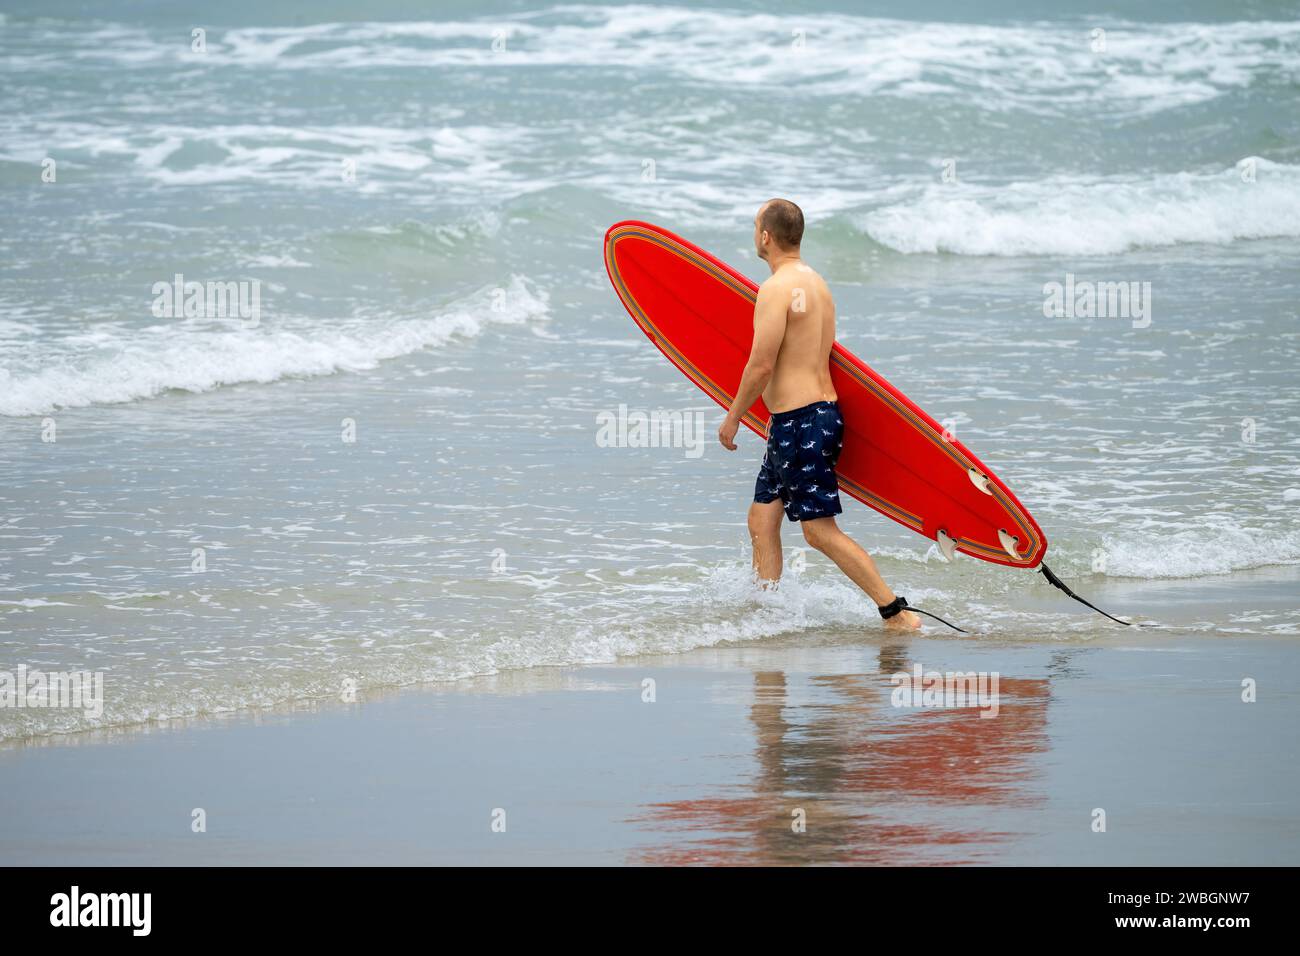 Personne non identifiée entrant dans l'eau, avec une planche de surf rouge. Banque D'Images